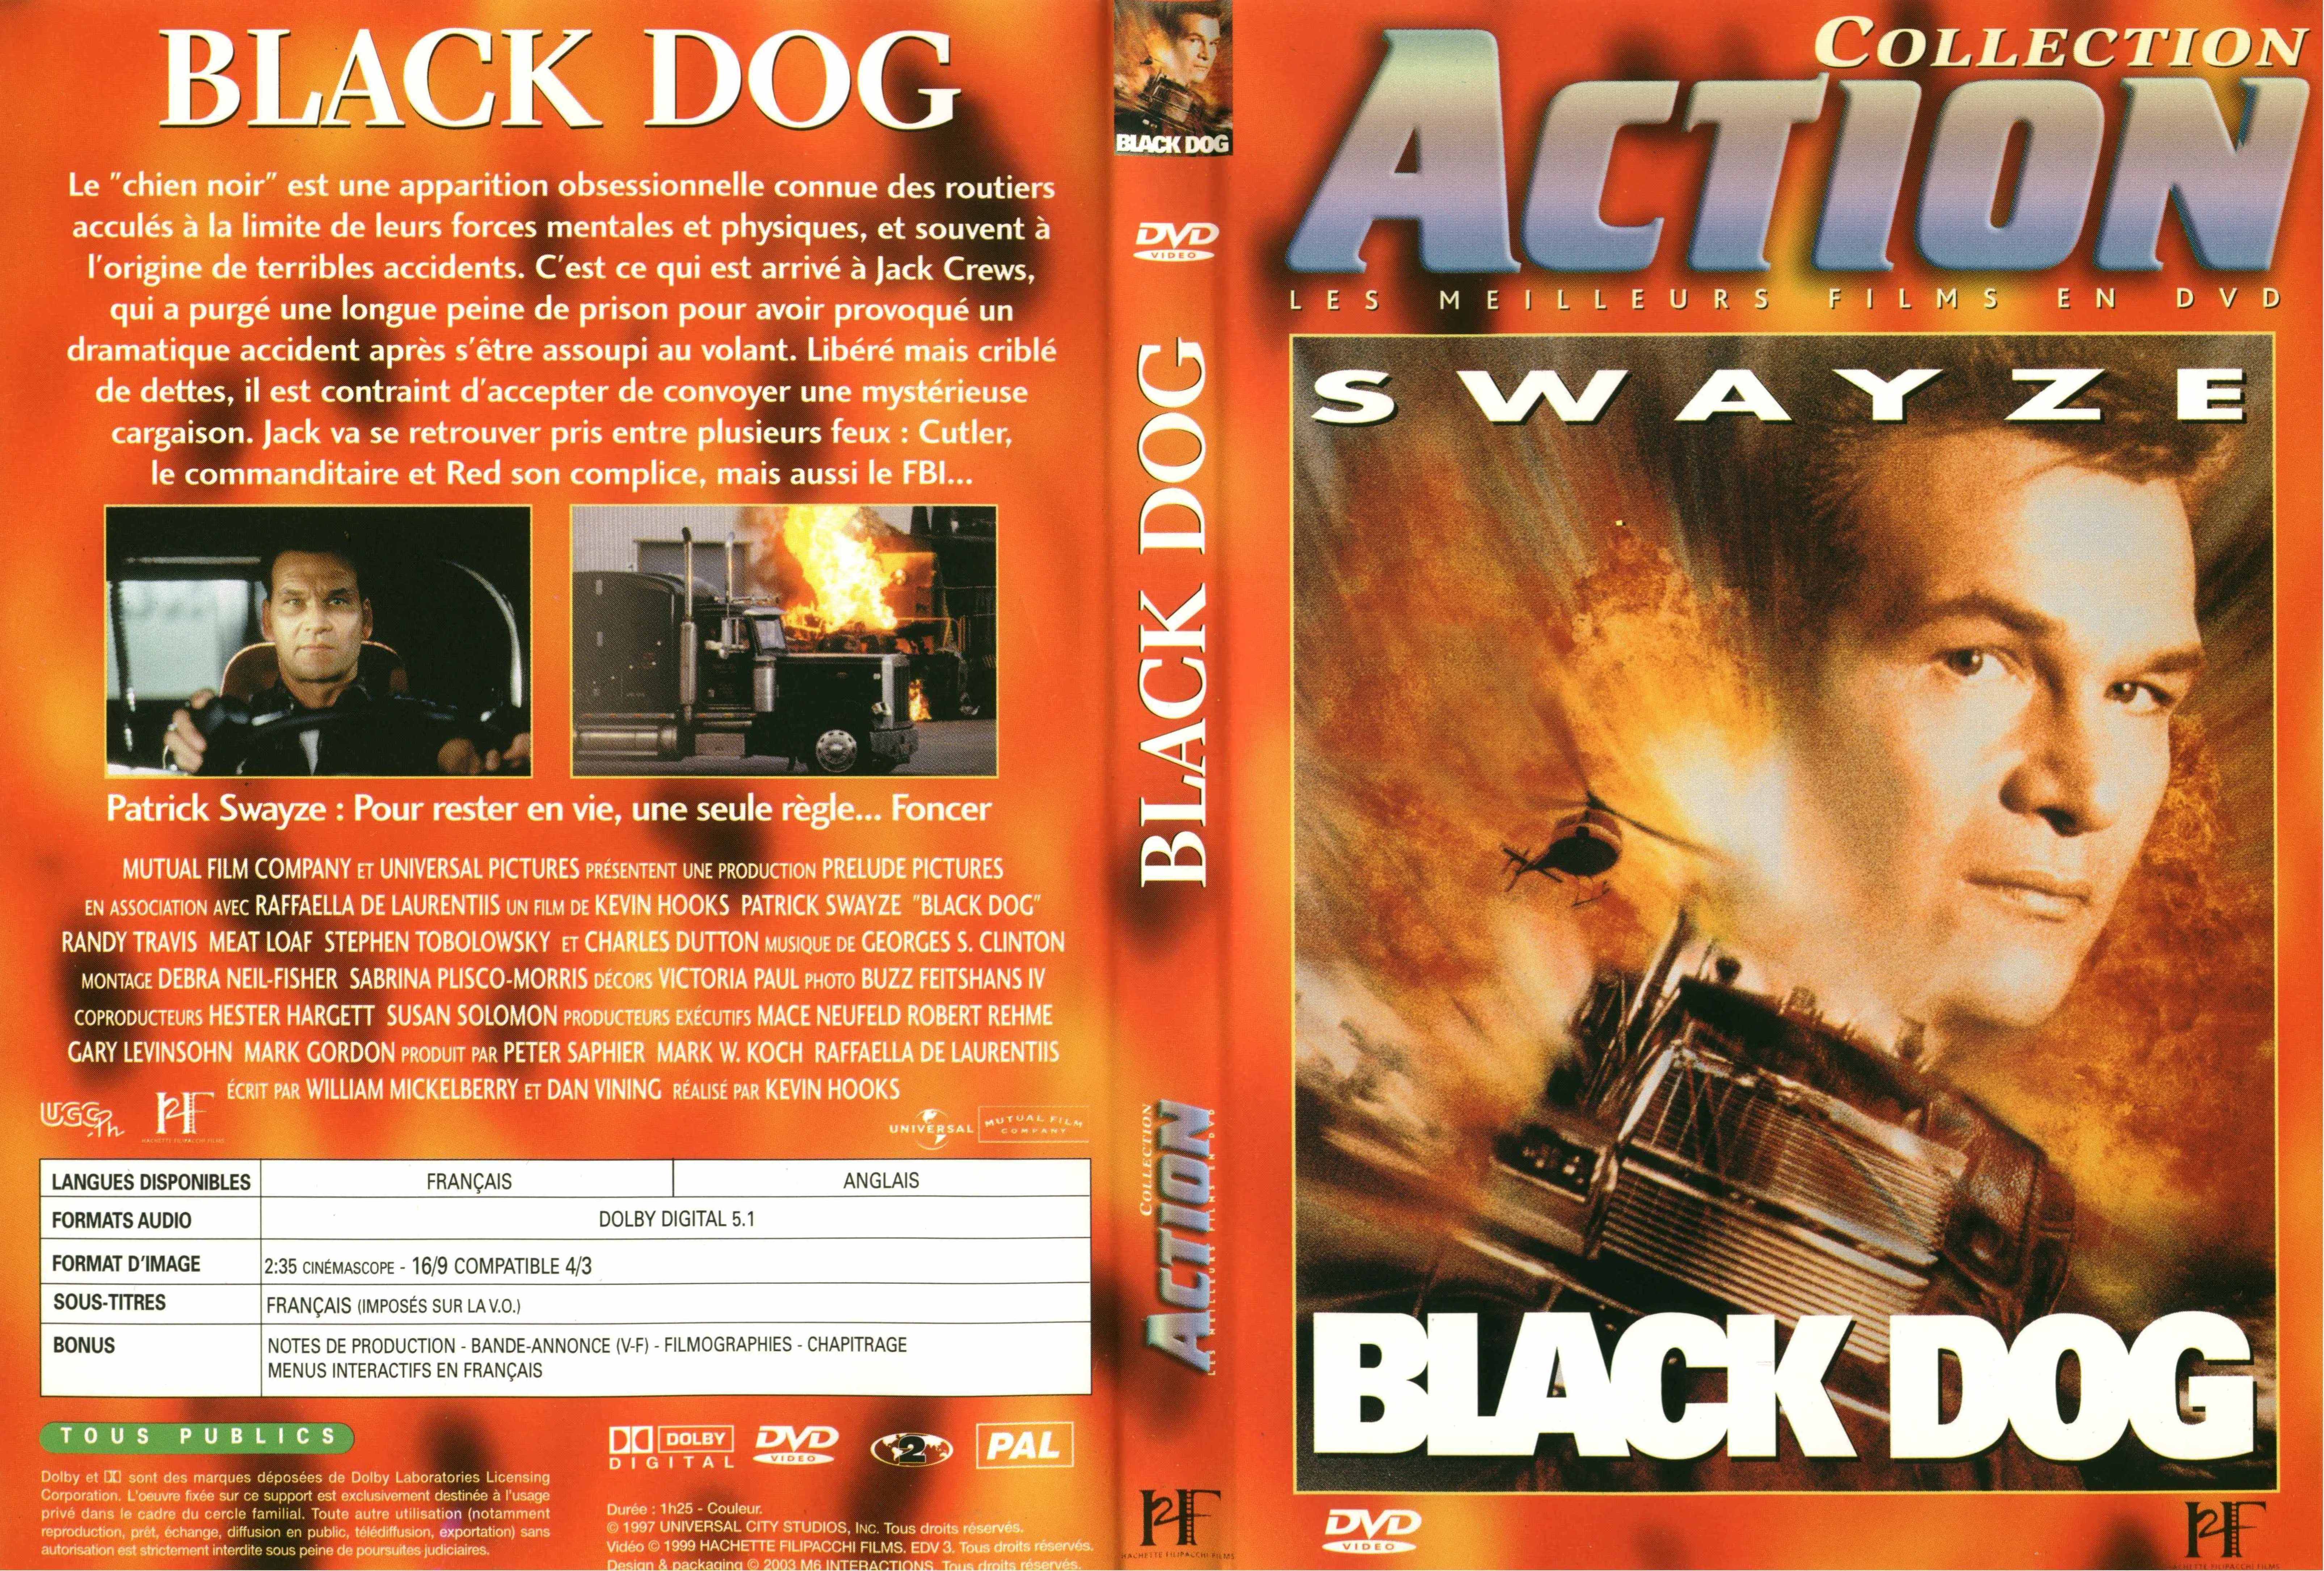 Jaquette DVD Black dog v3